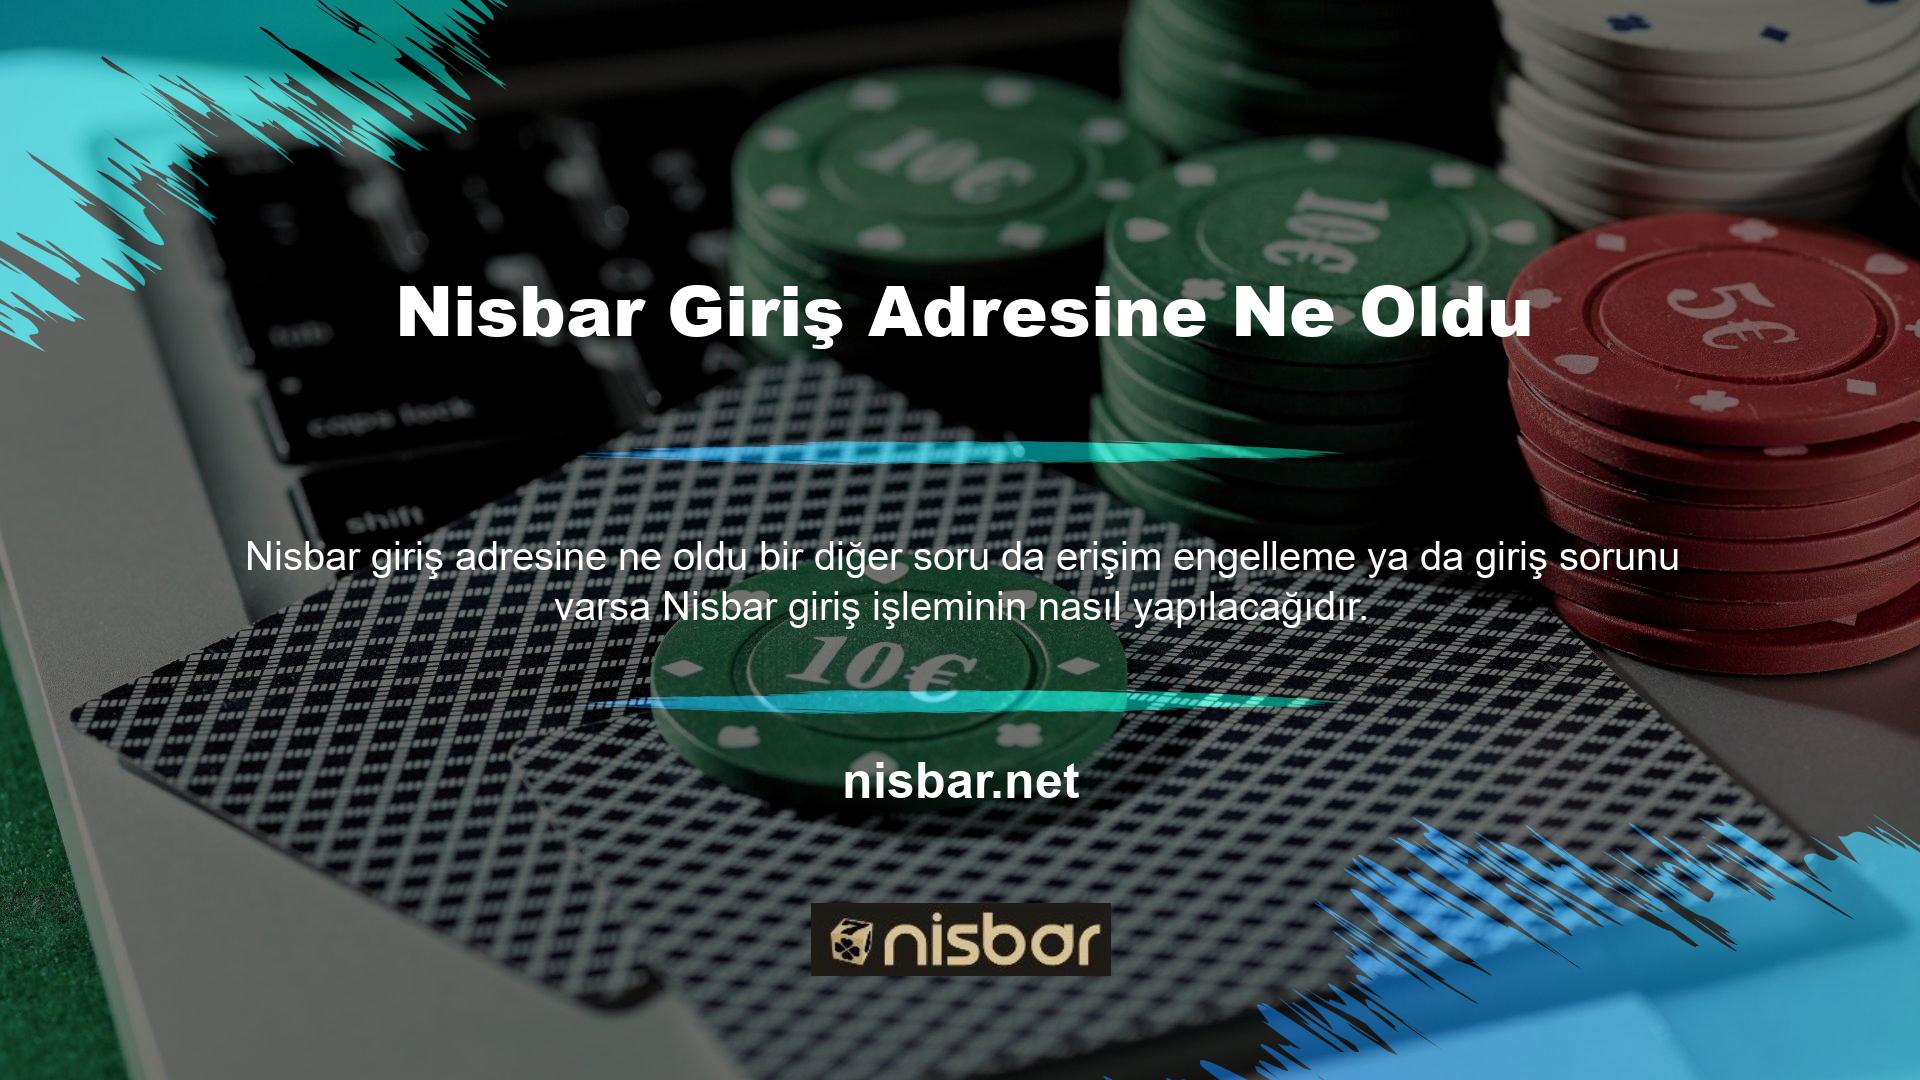 Cevap Nisbar affiliate sayfasıdır